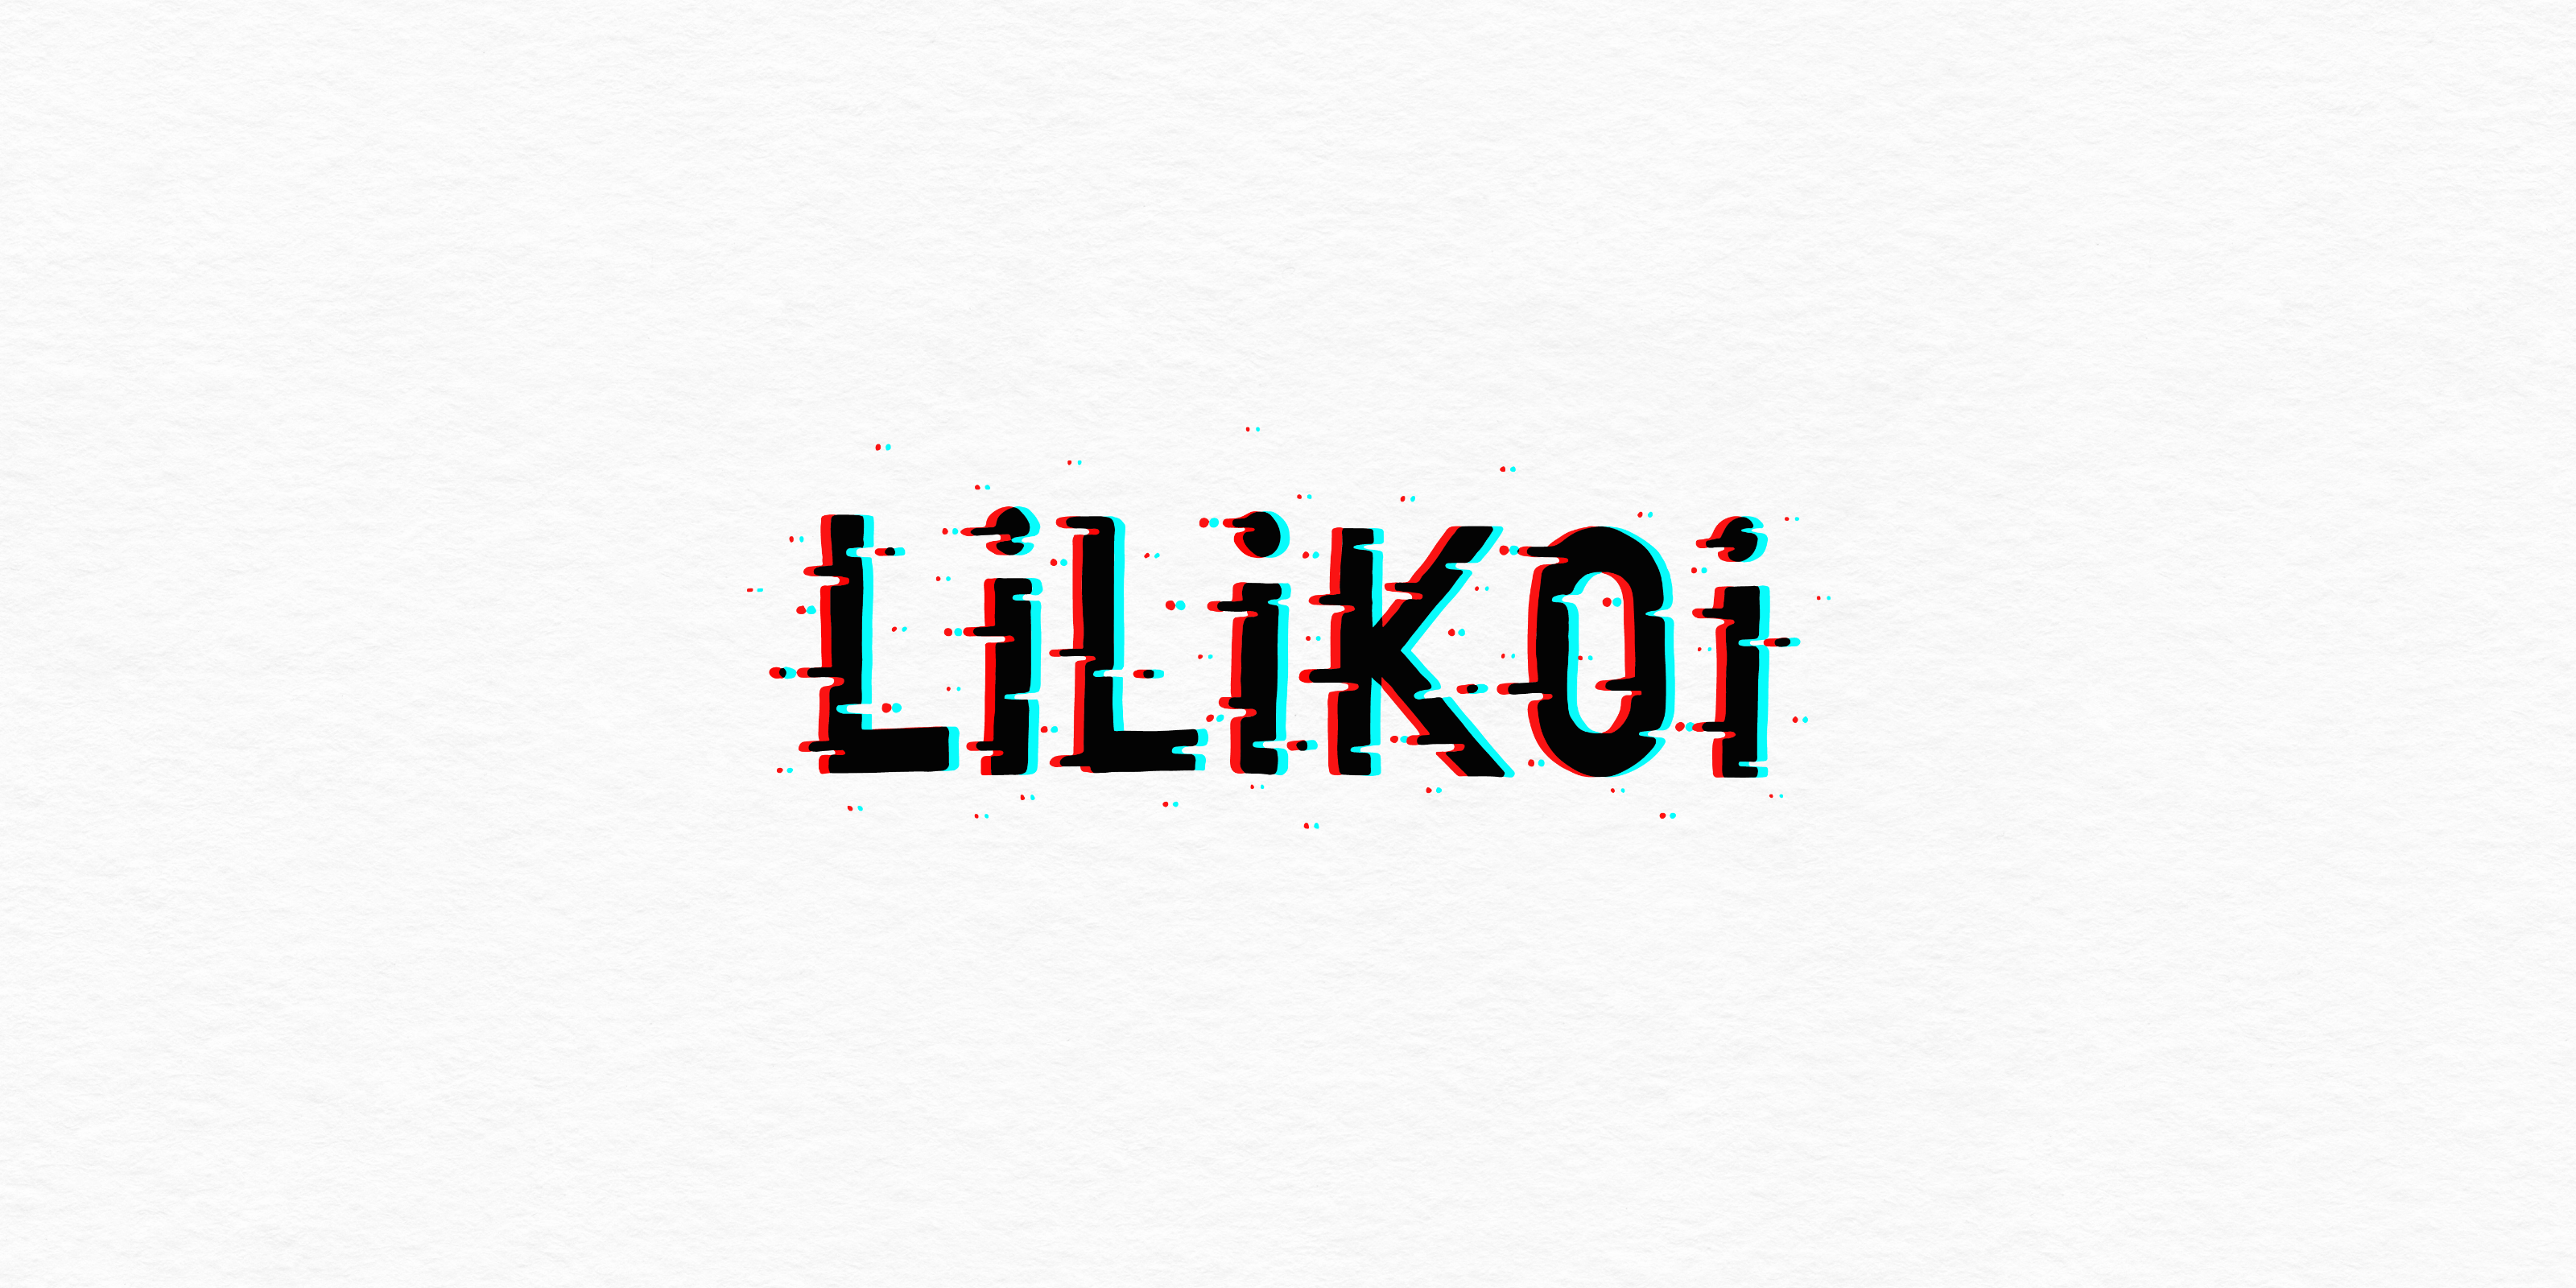 Lilikoi - logo with a glitch effect